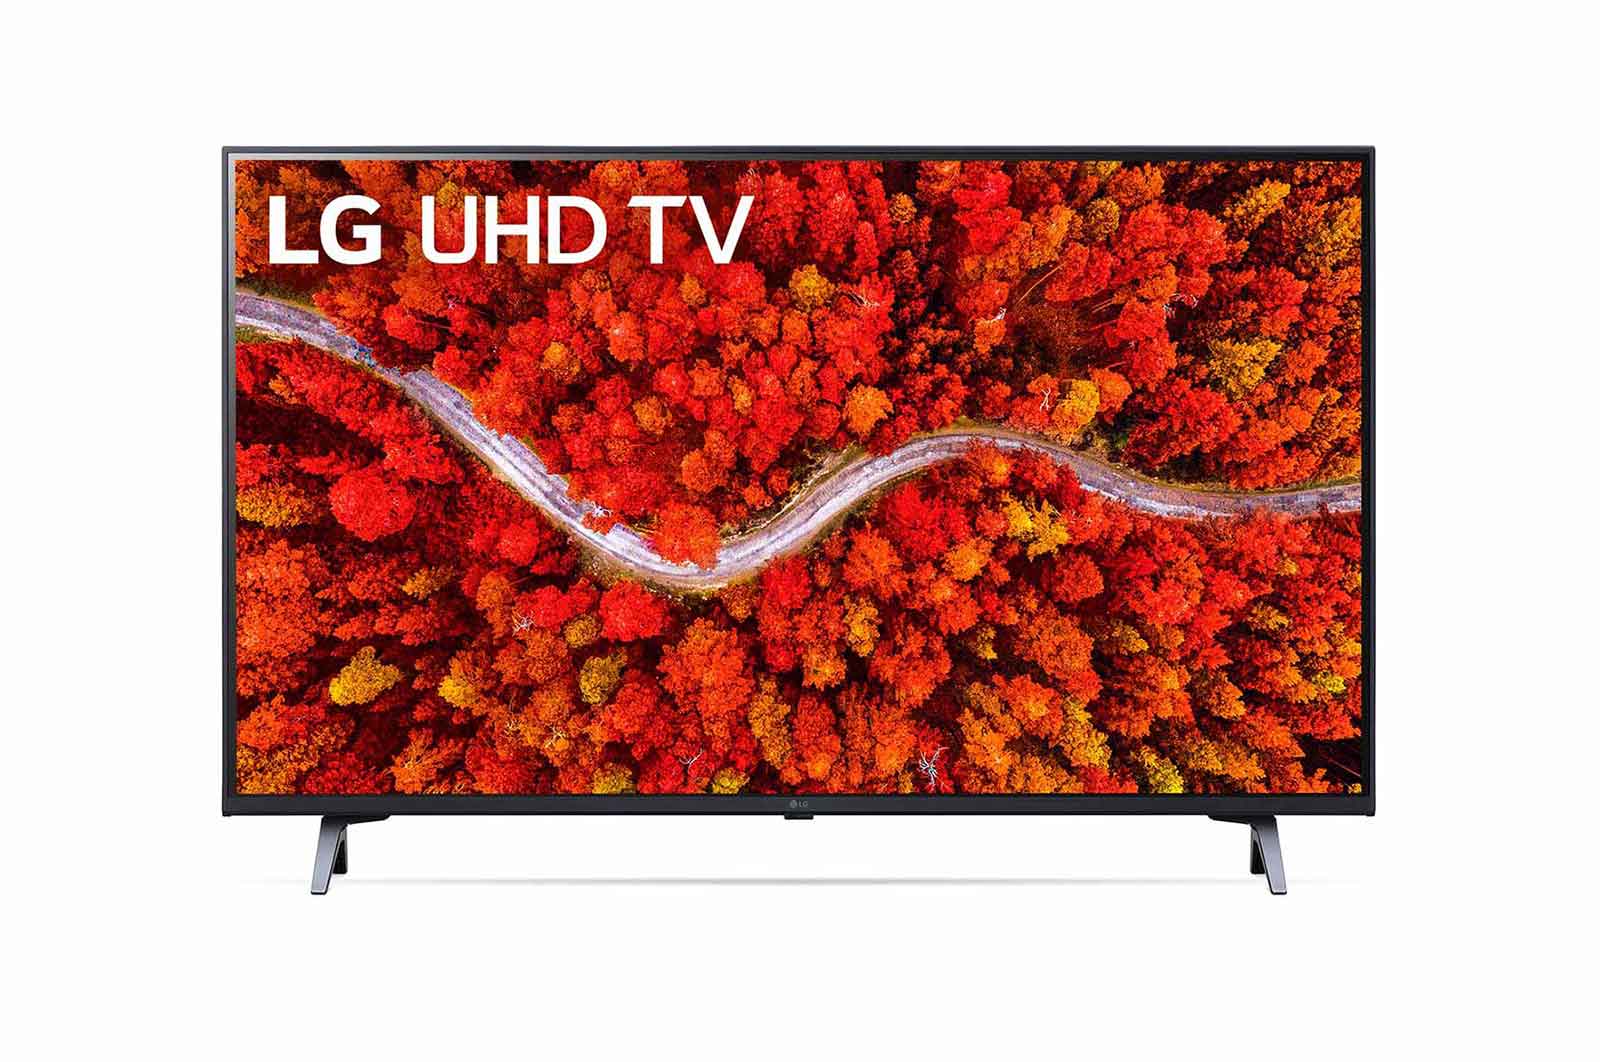 LG - LED TV 43UP8000PTB | 1 - Login Megastore